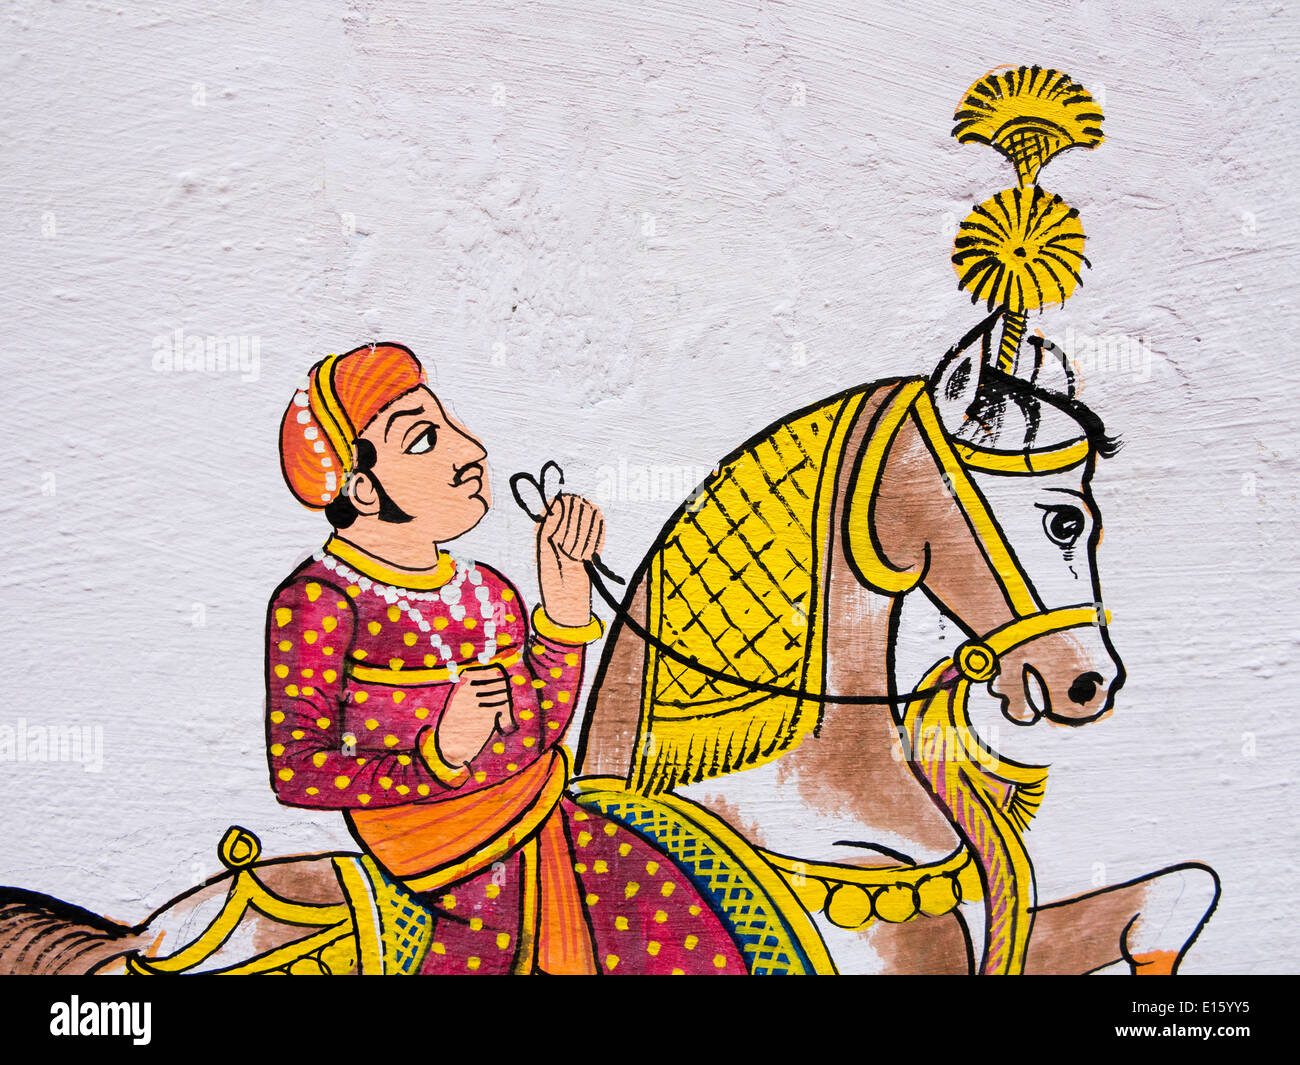 L'Inde, Rajasthan, Udaipur, la peinture murale traditionnelle Rajput de l'homme sur le cheval Banque D'Images